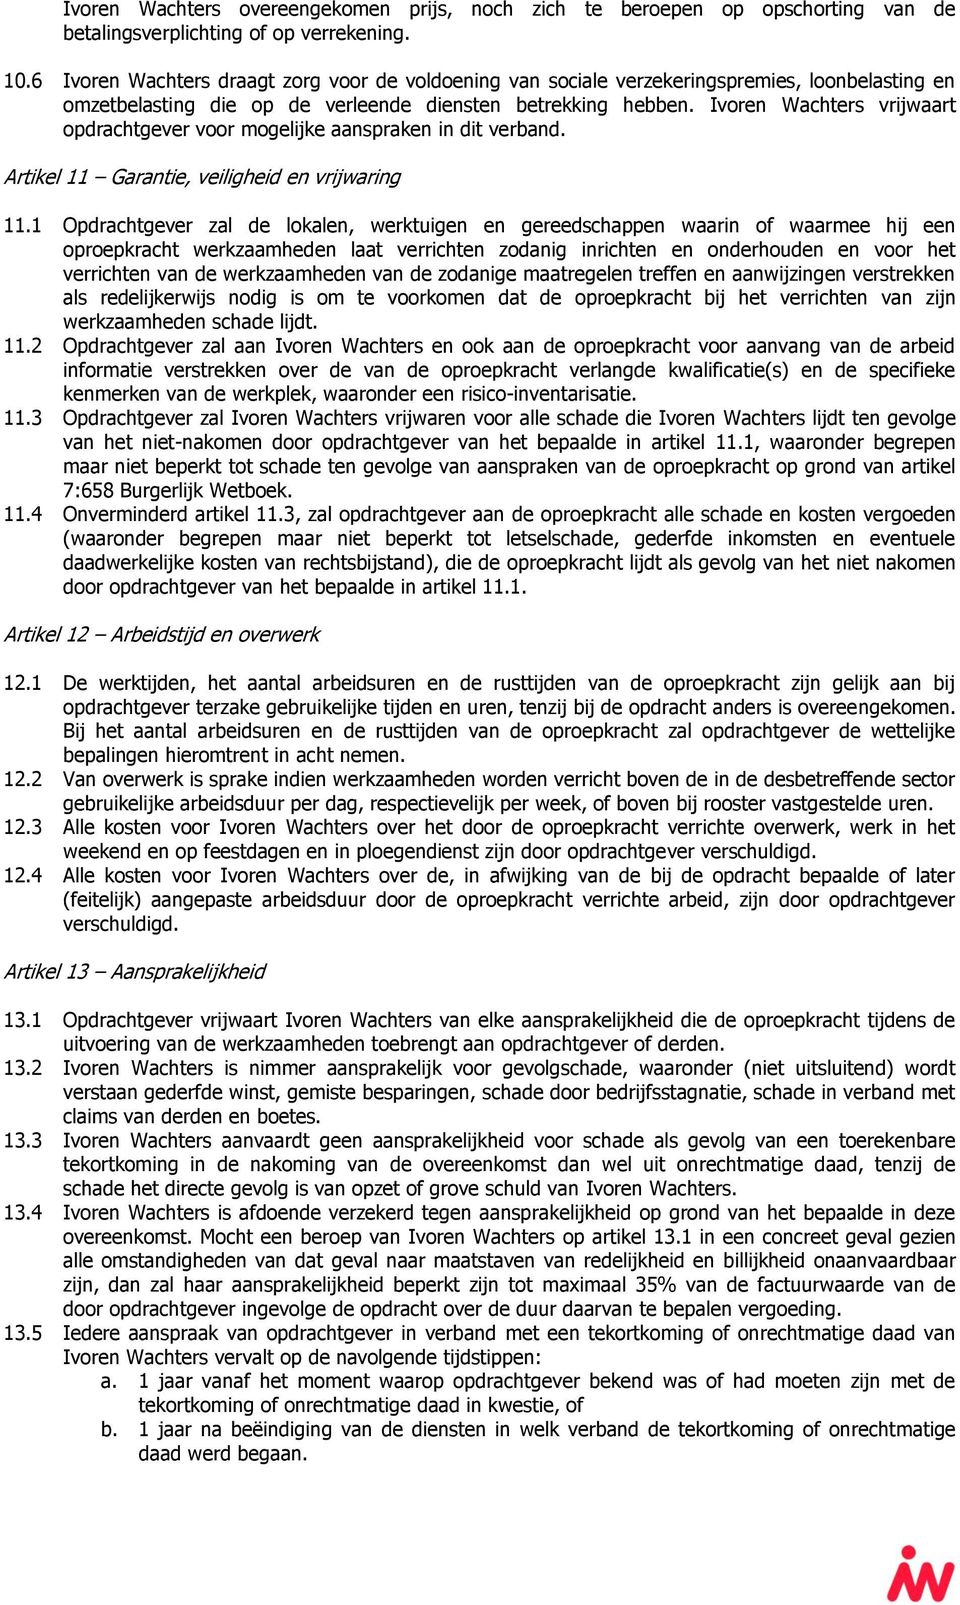 Ivoren Wachters vrijwaart opdrachtgever voor mogelijke aanspraken in dit verband. Artikel 11 Garantie, veiligheid en vrijwaring 11.